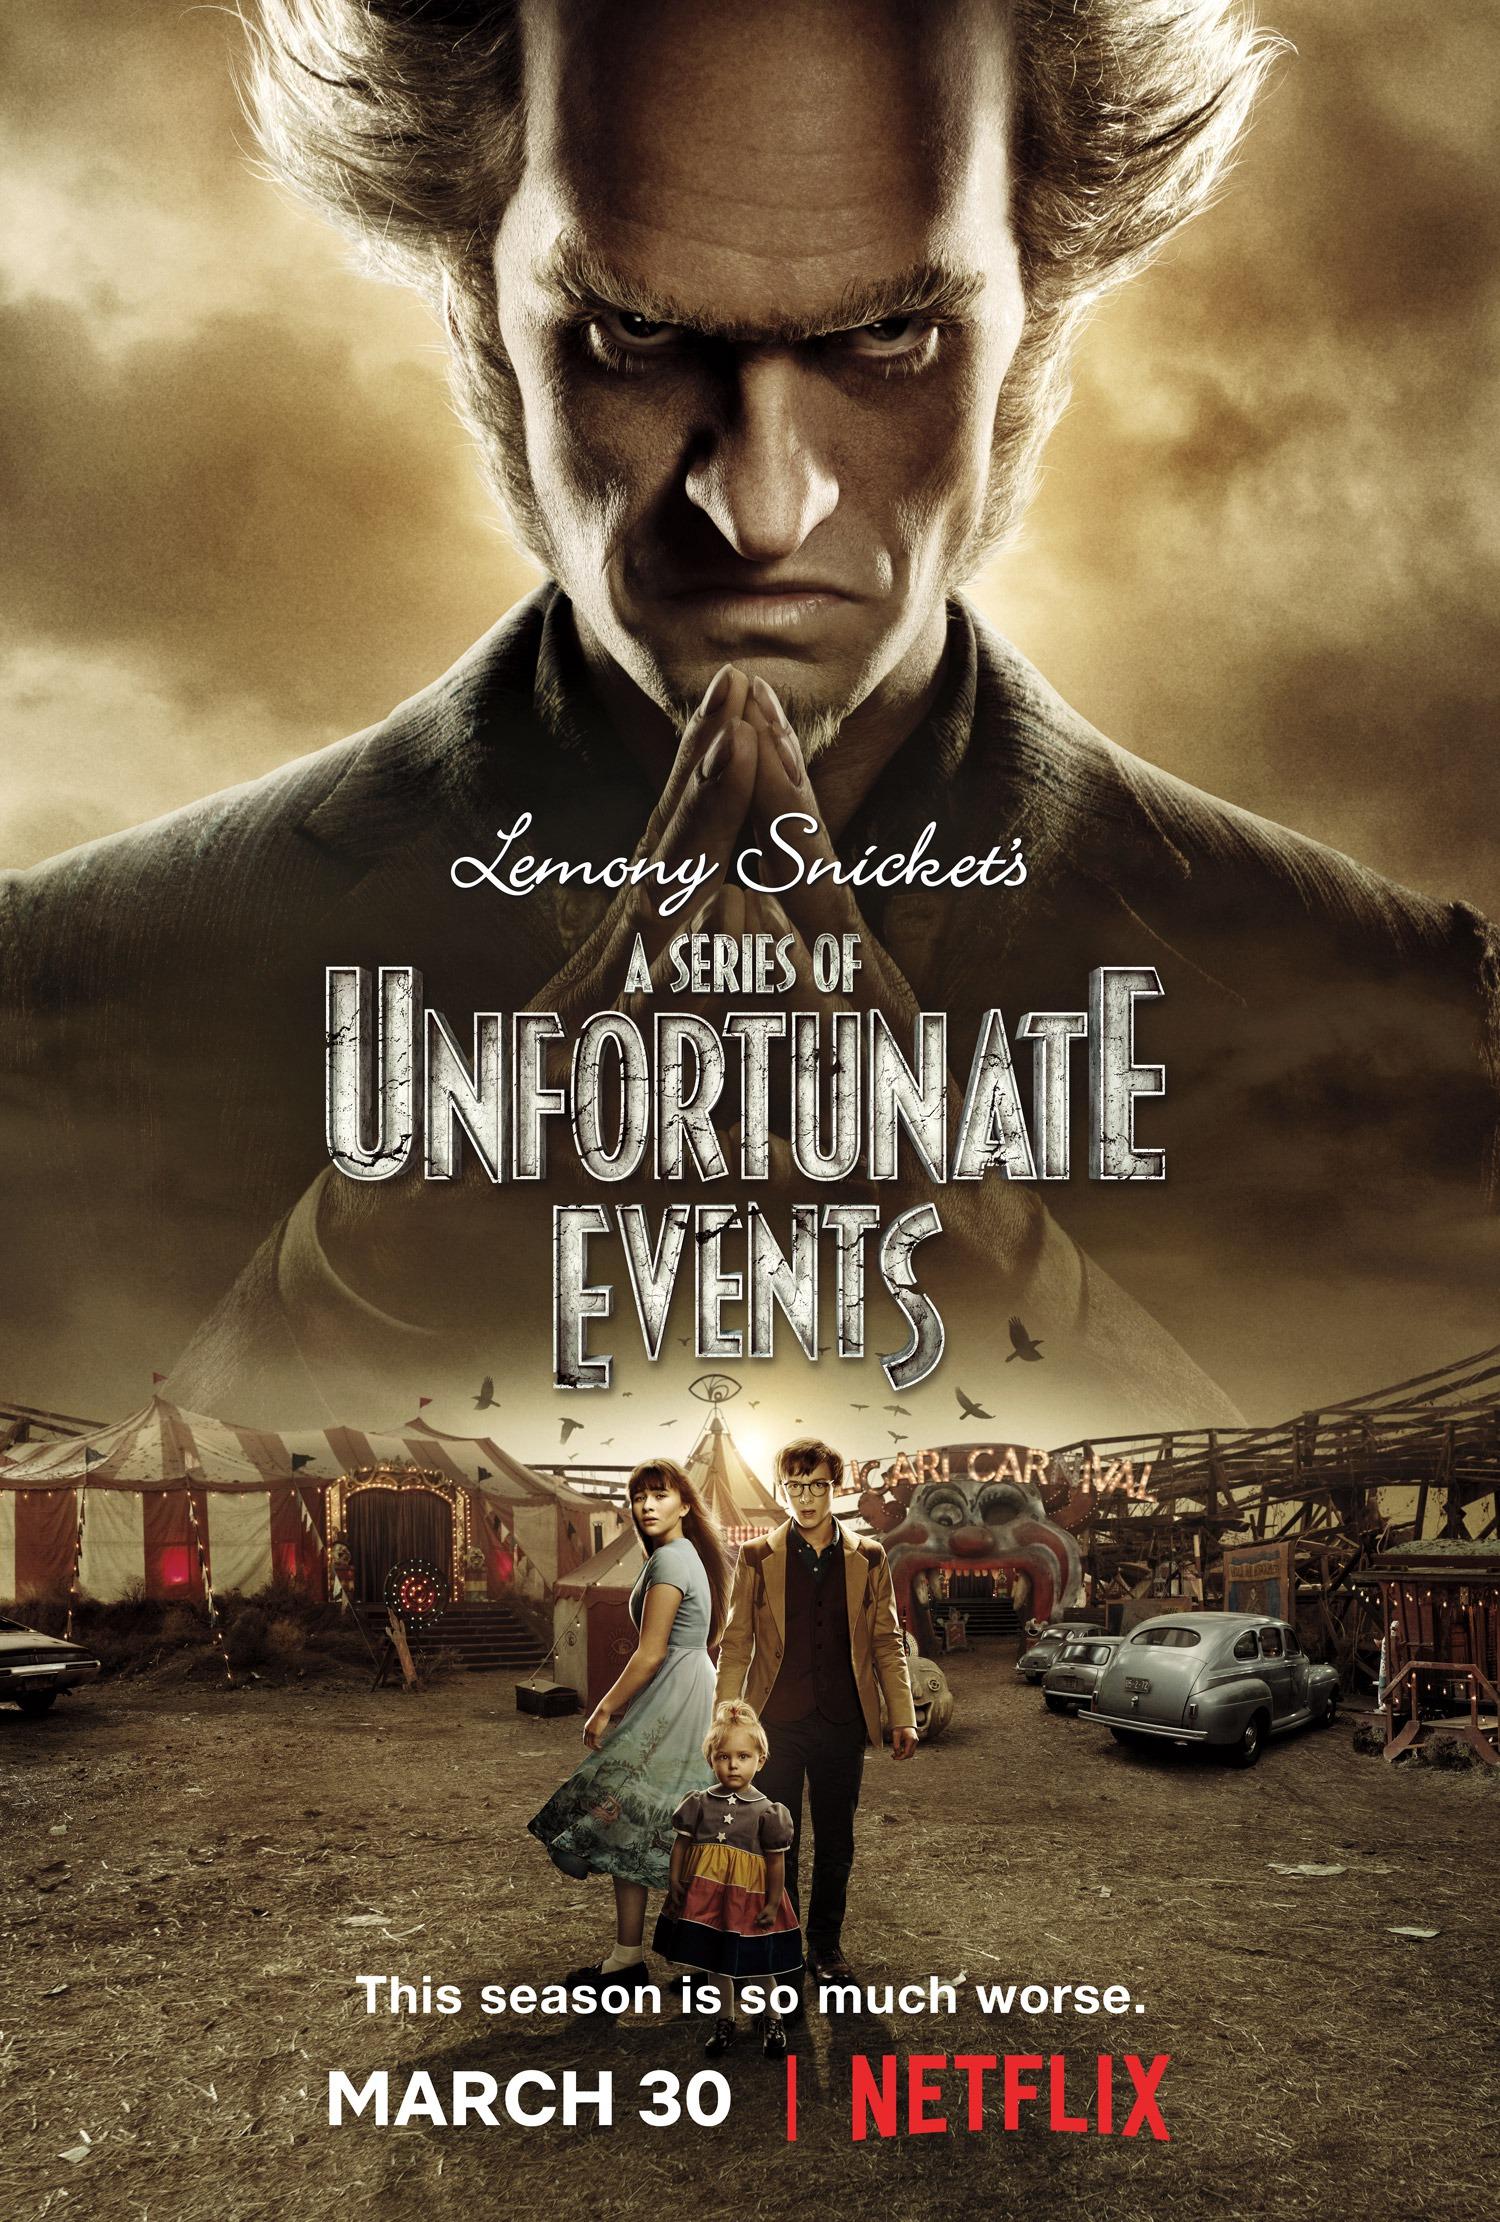 Постер фильма Лемони Сникет: 33 несчастья | Series of Unfortunate Events